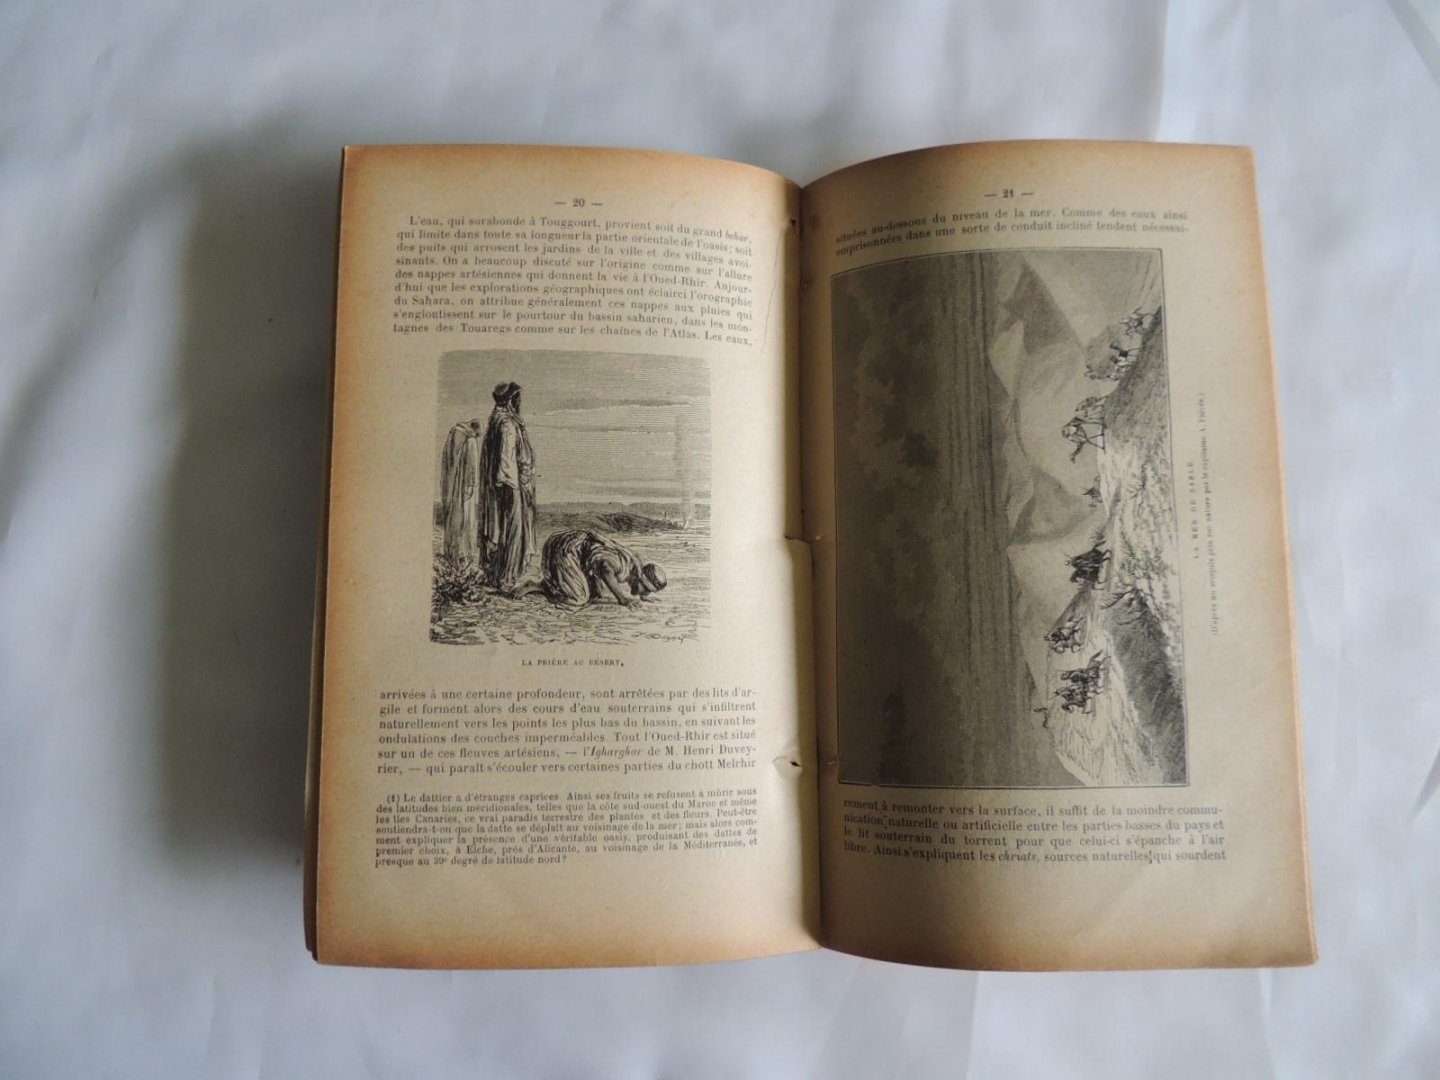 Comte Goblet d' Alviella - Le Sahara algerien . N° 63  de la Bibliothèque illustrée Bibliotheque illustree des voyages autour du monde par terre et par mer